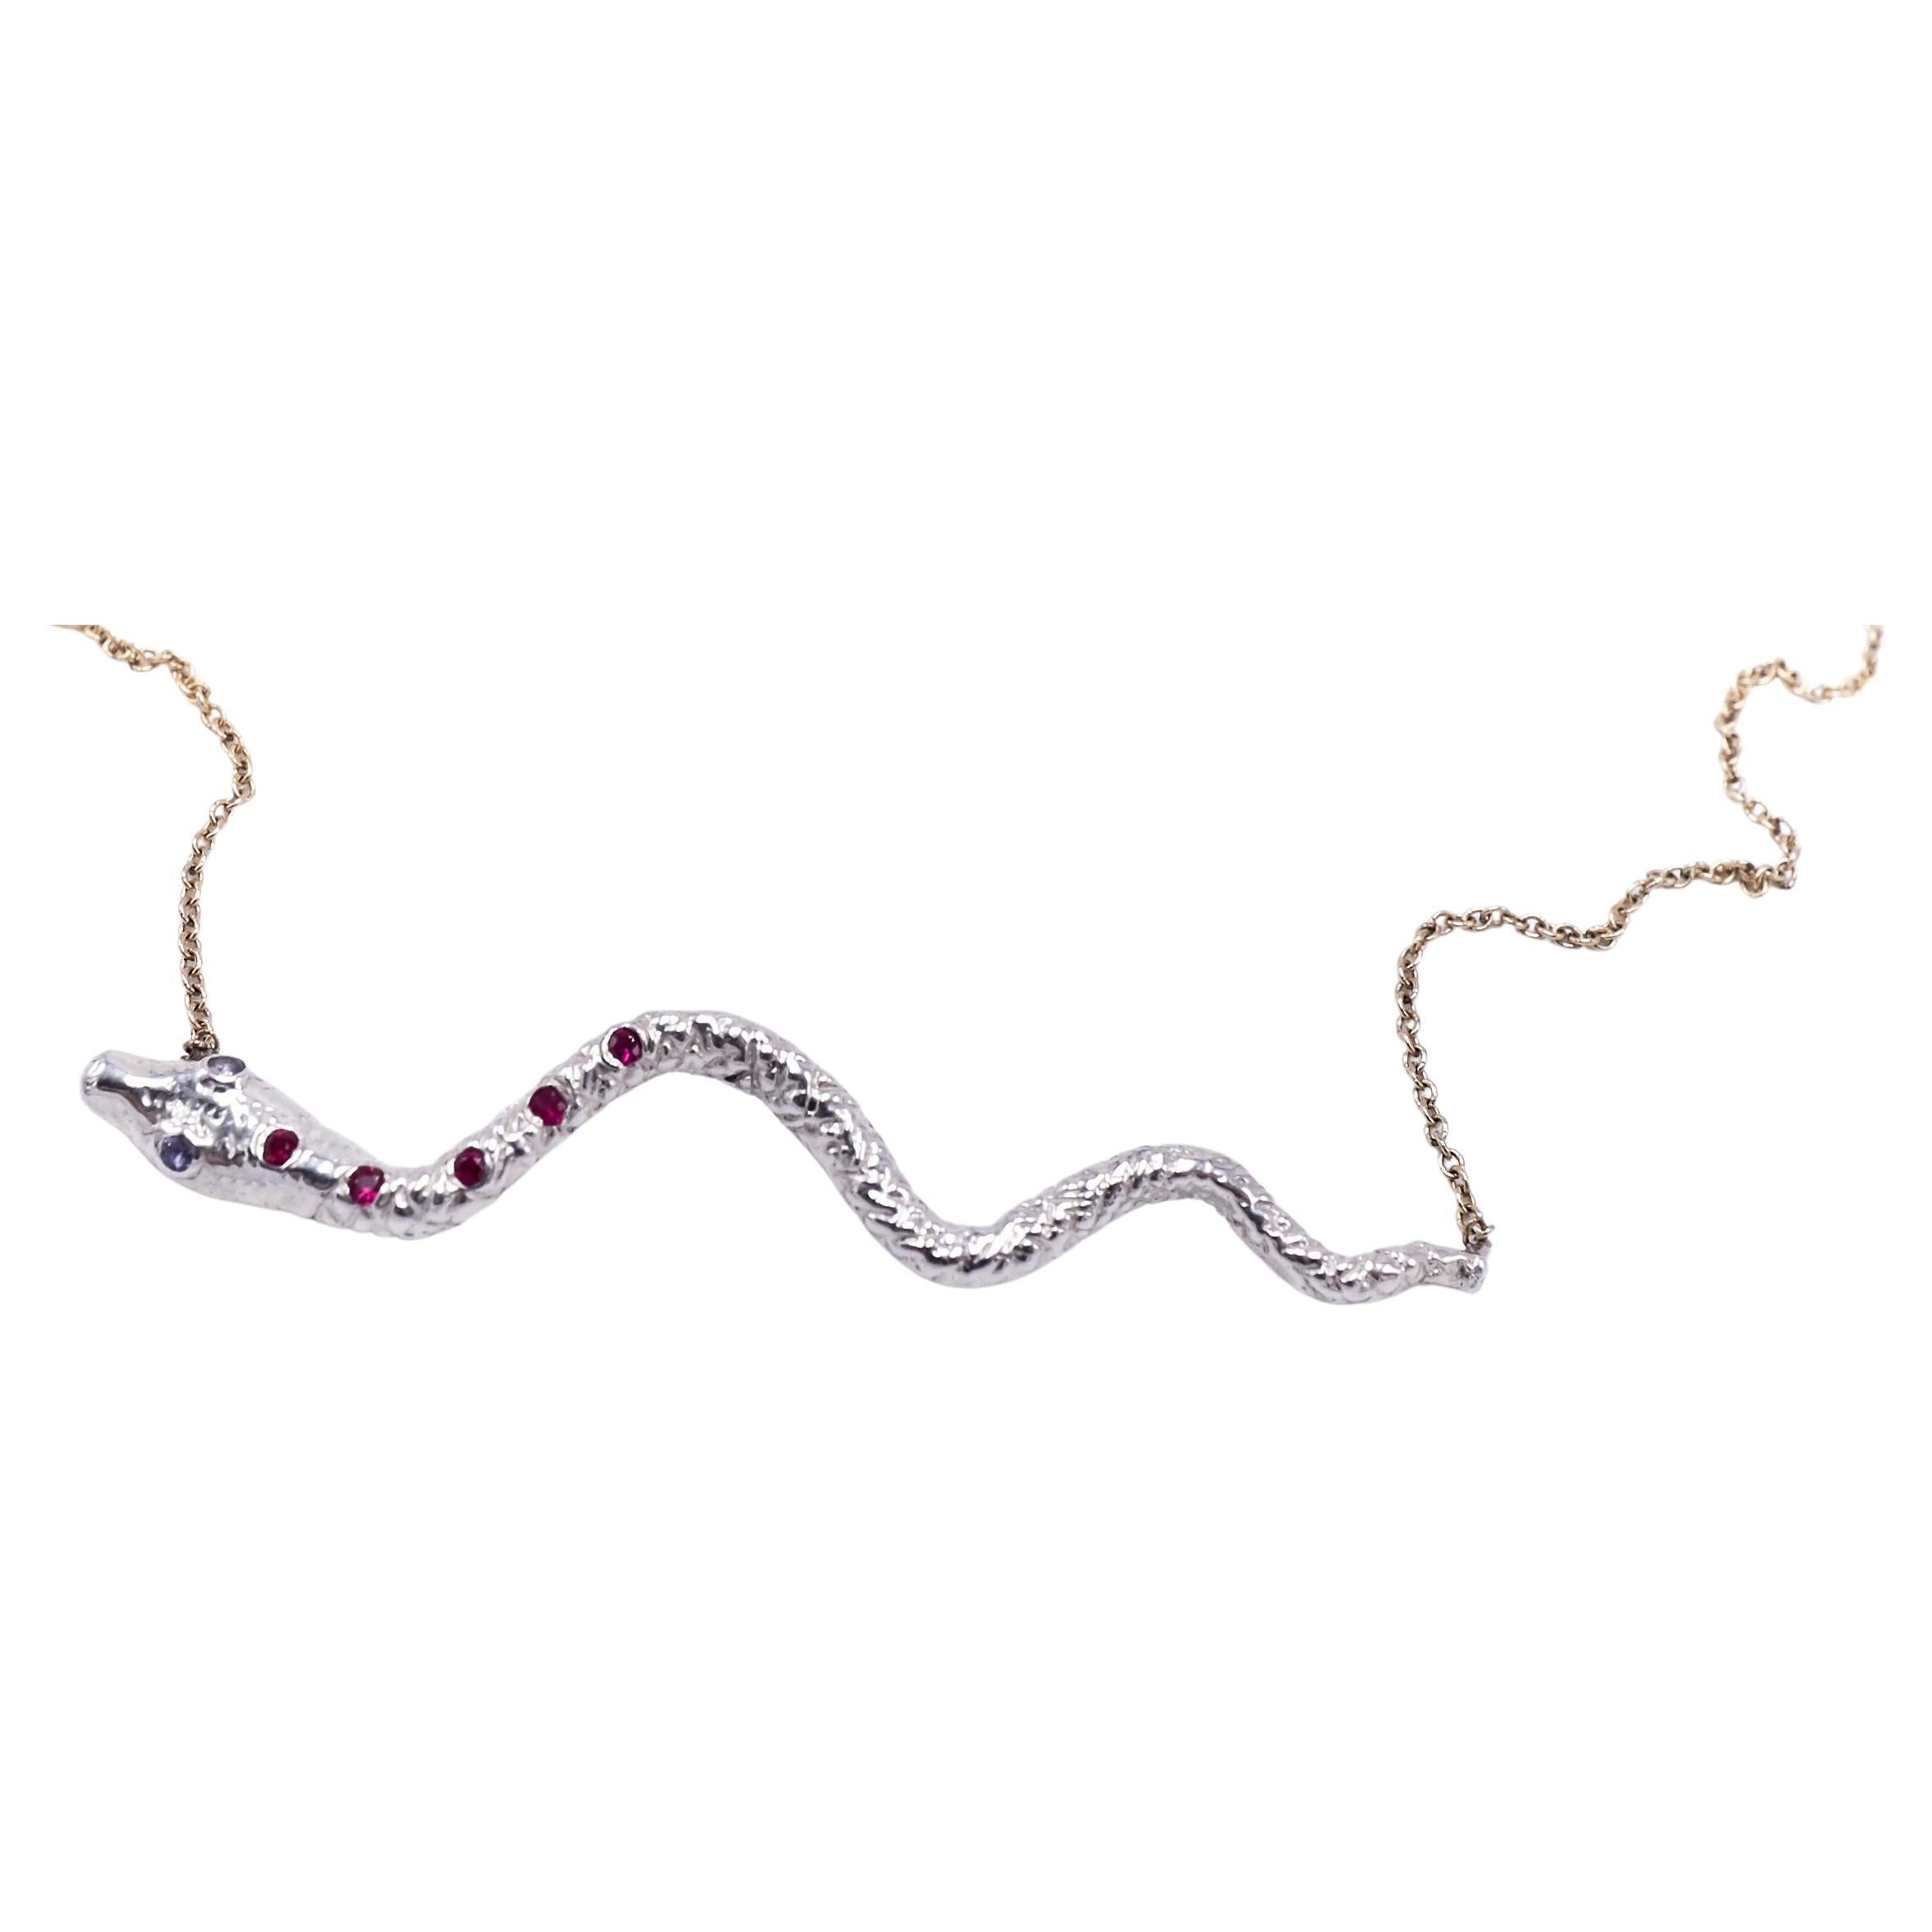 Collier ras du cou en forme de serpent avec chaîne J Dauphin en or, rubis et iolite